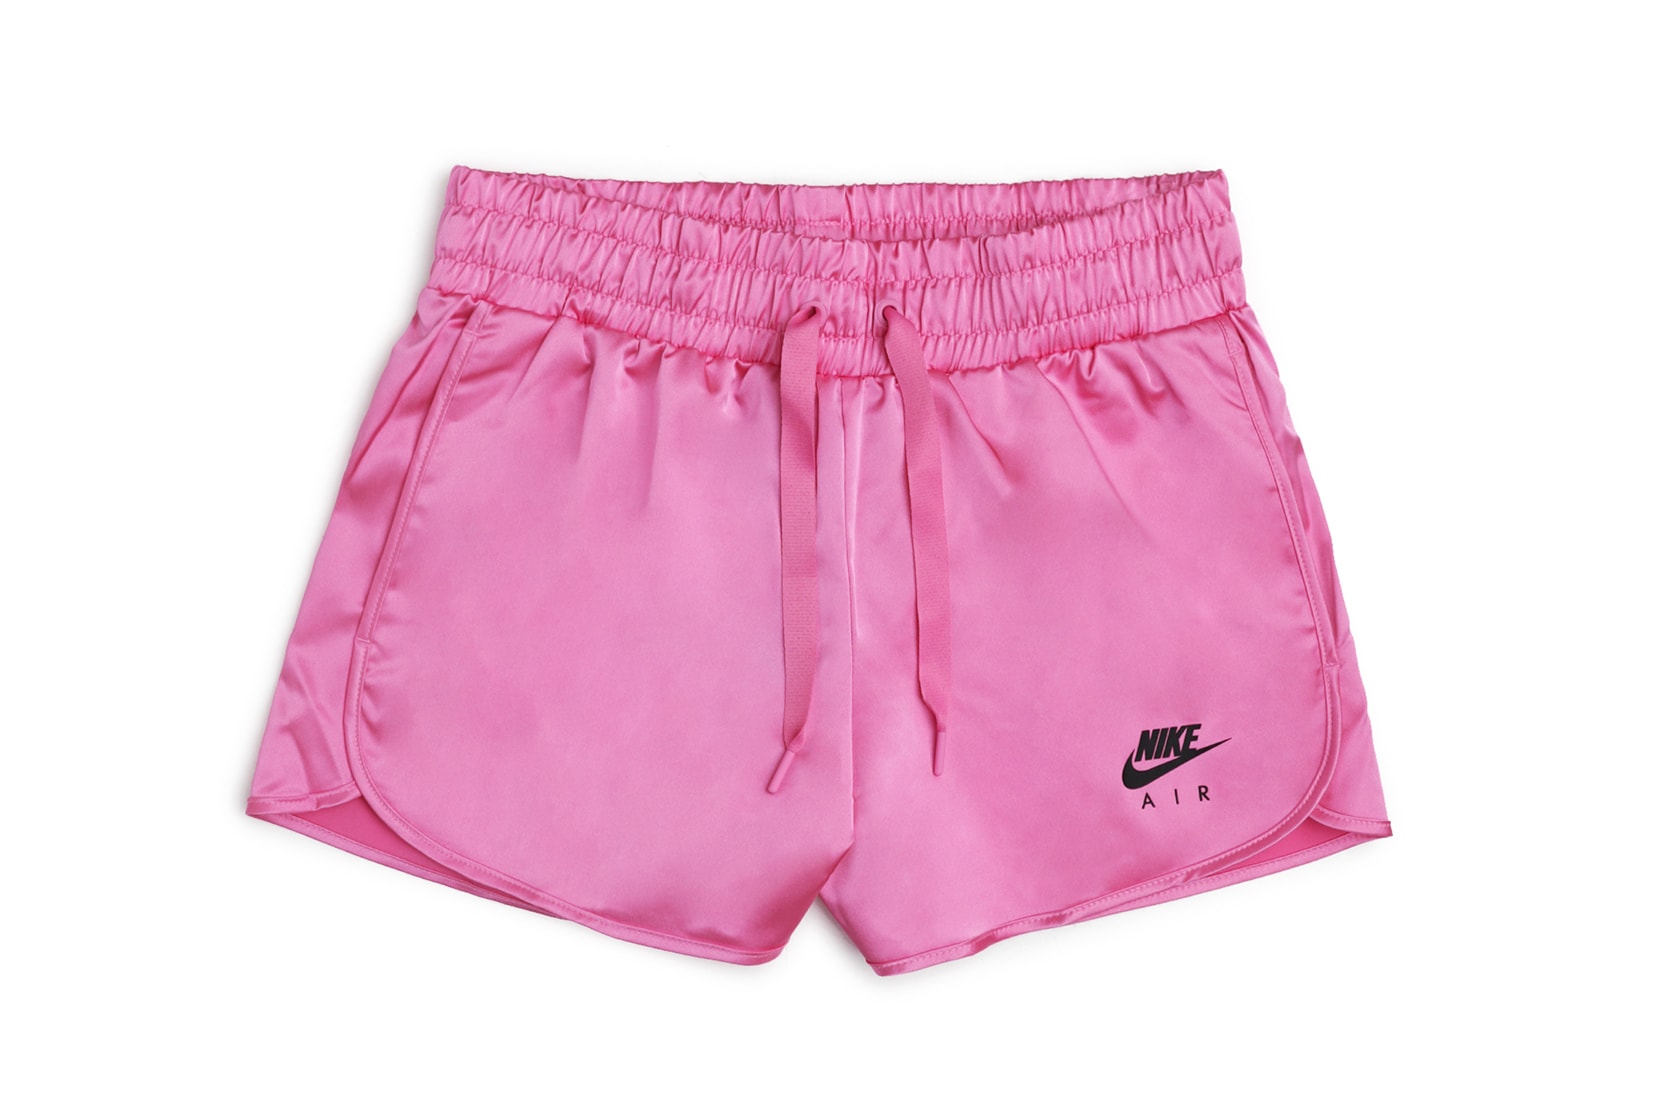 Short satin shorts - dark pink - Undiz